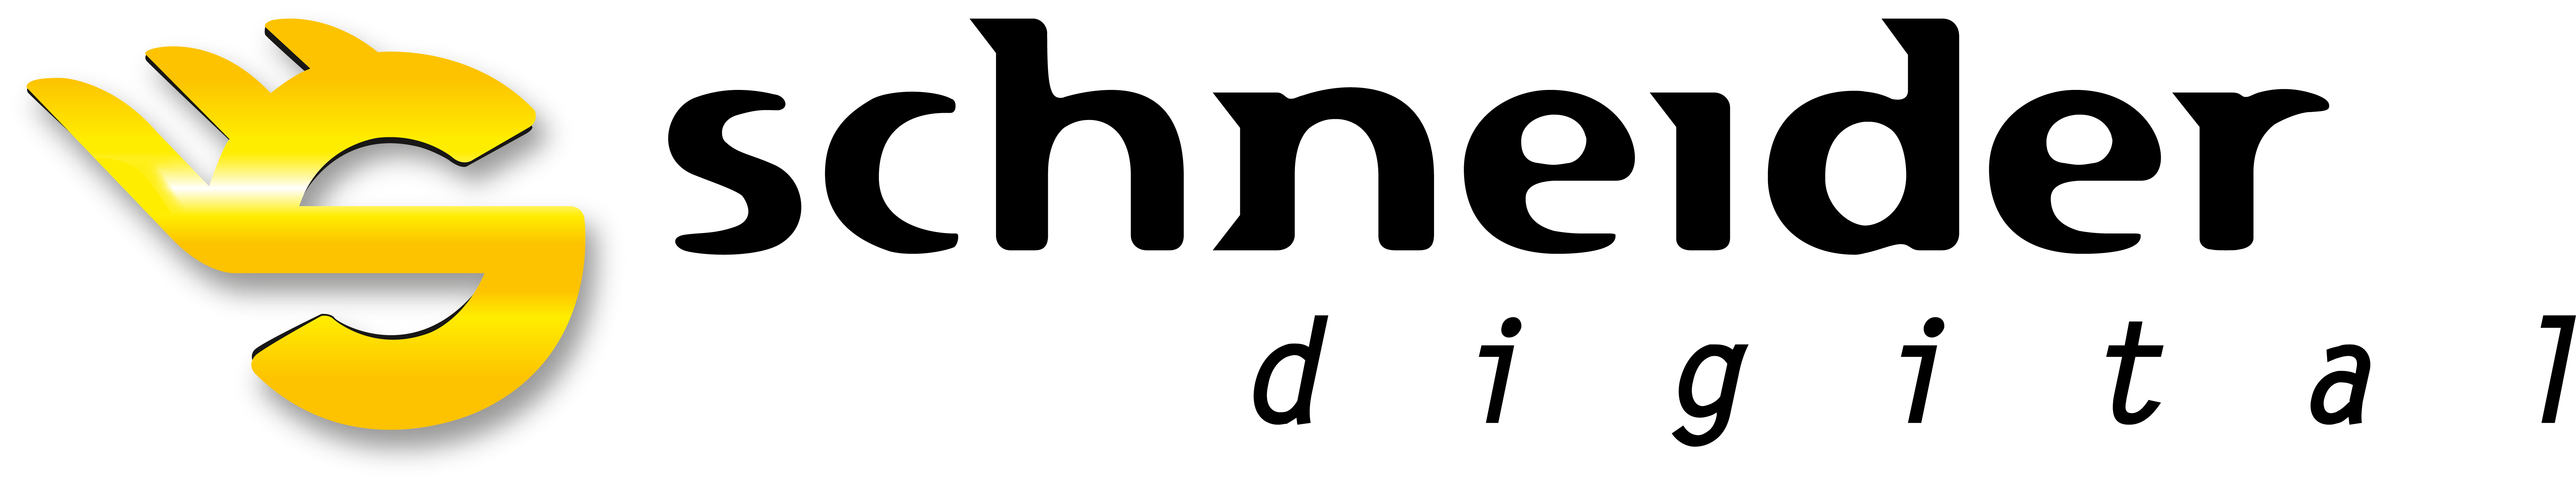 schneider digital logo color rgb